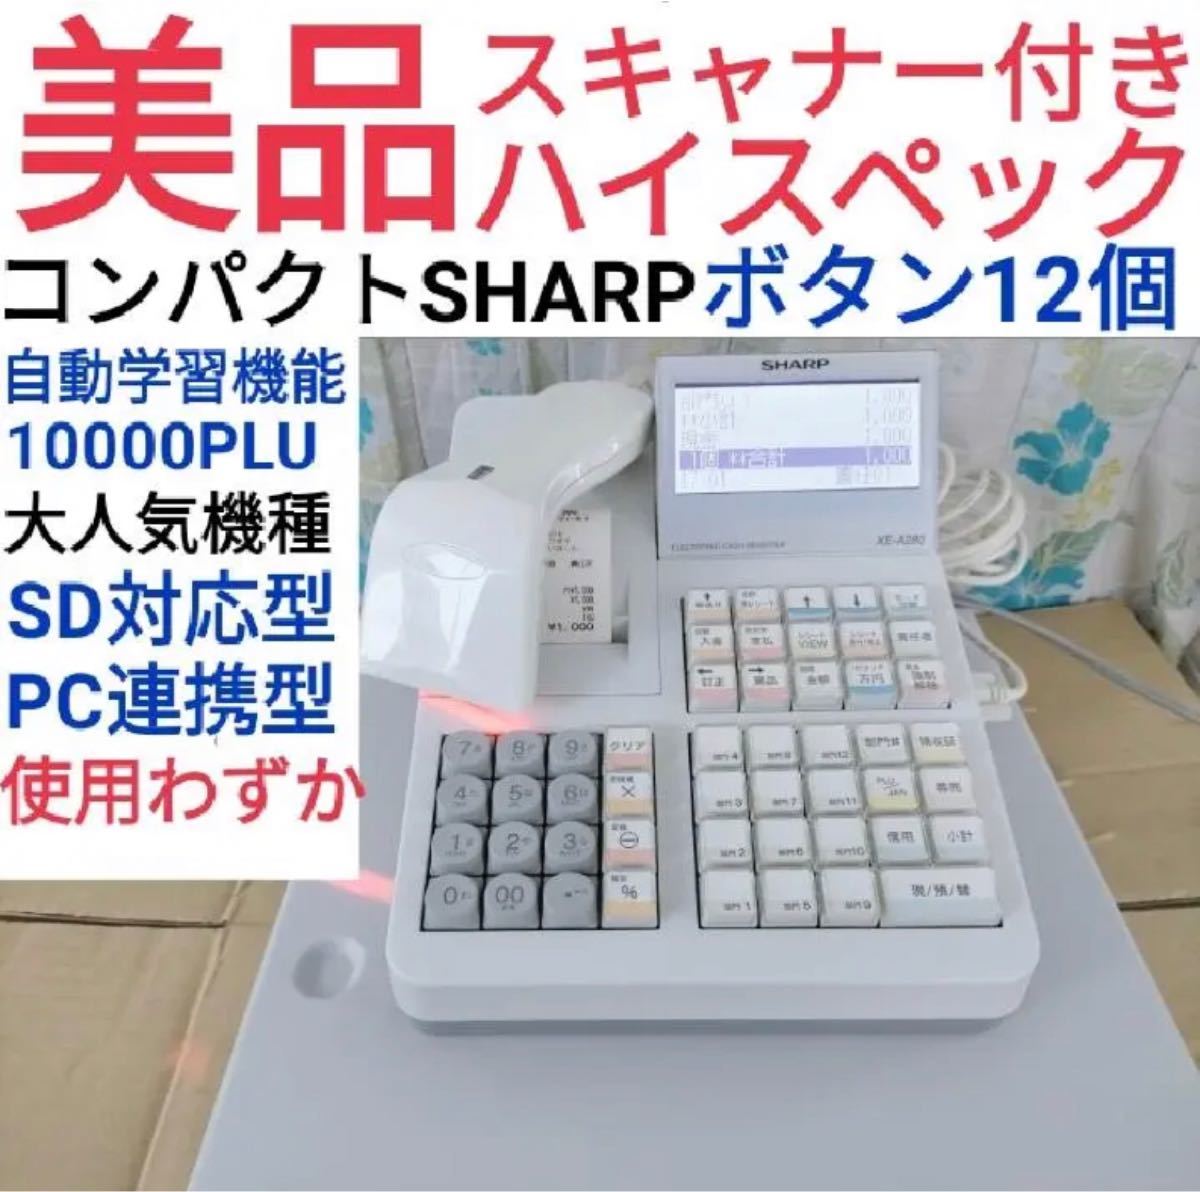 SHARP レジスター XE-A280ハンドスキャナー付きn1美品 シャープ SHARP